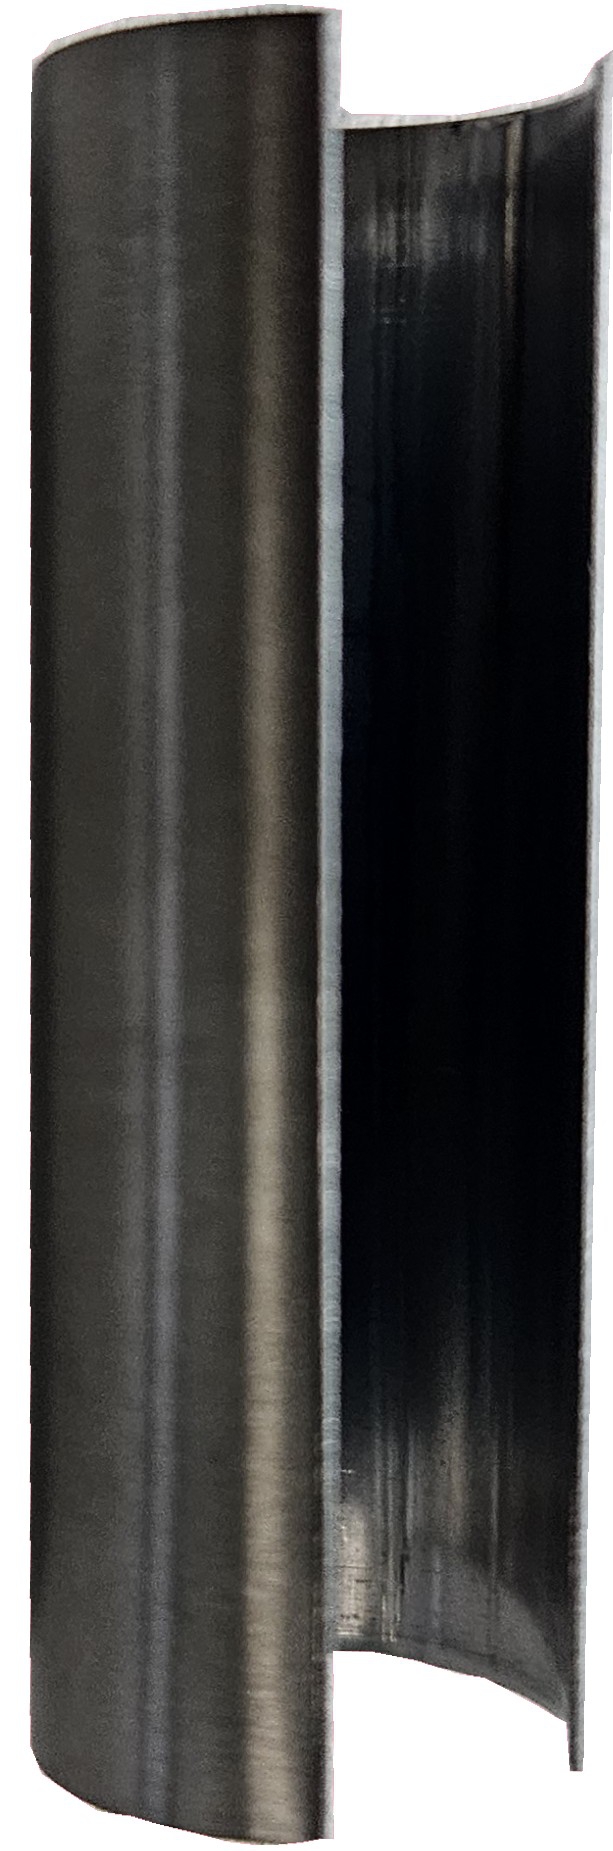 Zierhülse für 3-teilige Bänder, Mittelstück 47 mm; erdgrau